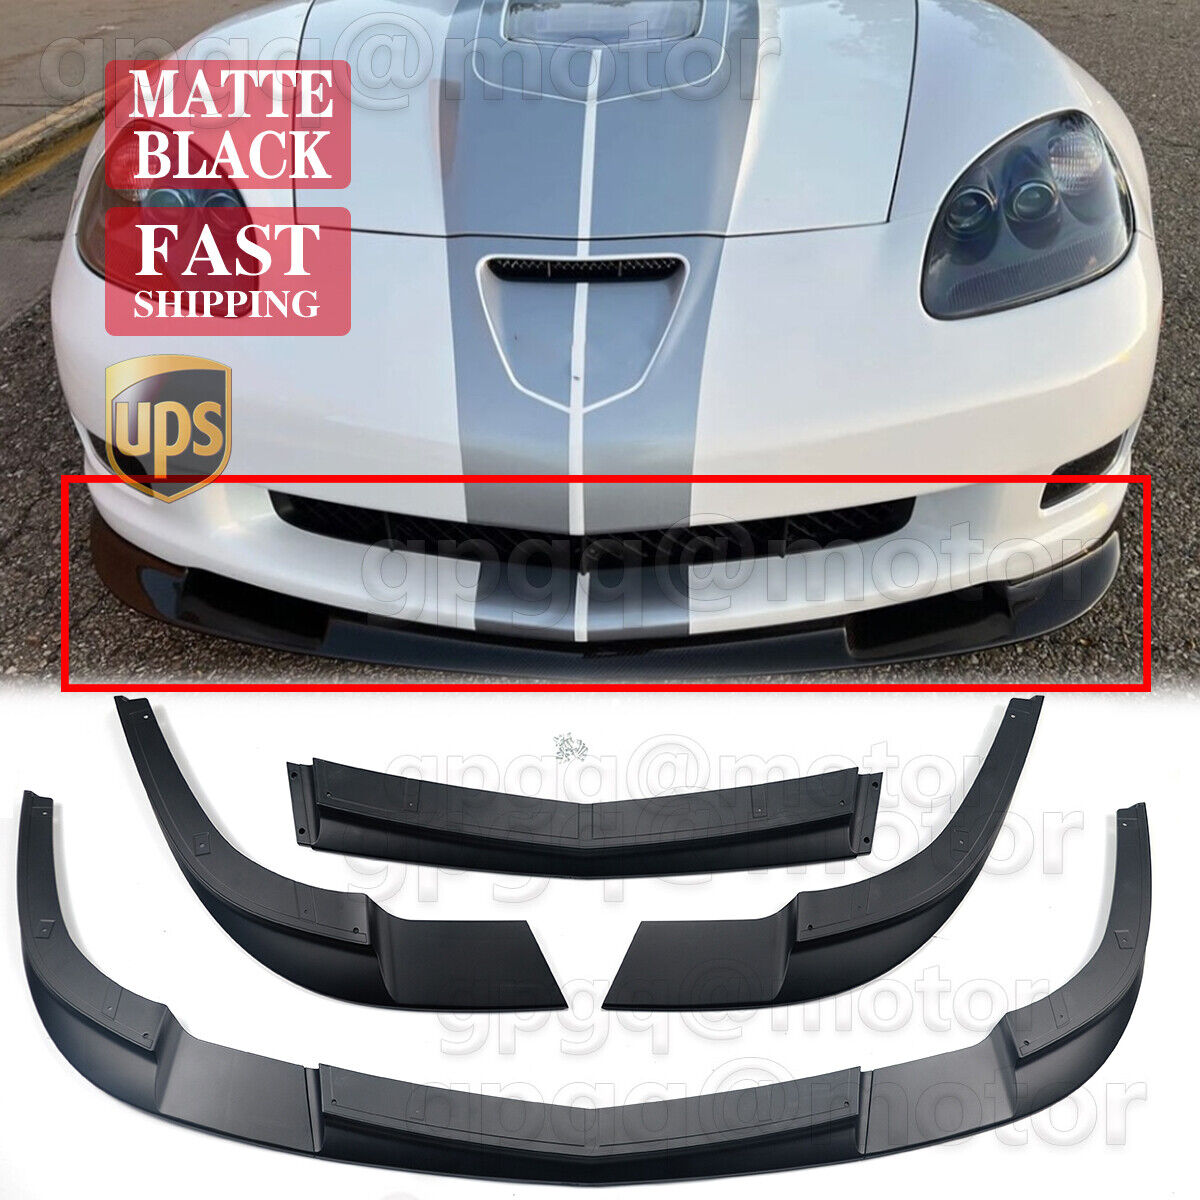 For Corvette C6 Z06 05-13 | ZR1 Style Matte Black Front Bumper Splitter Lip Kit